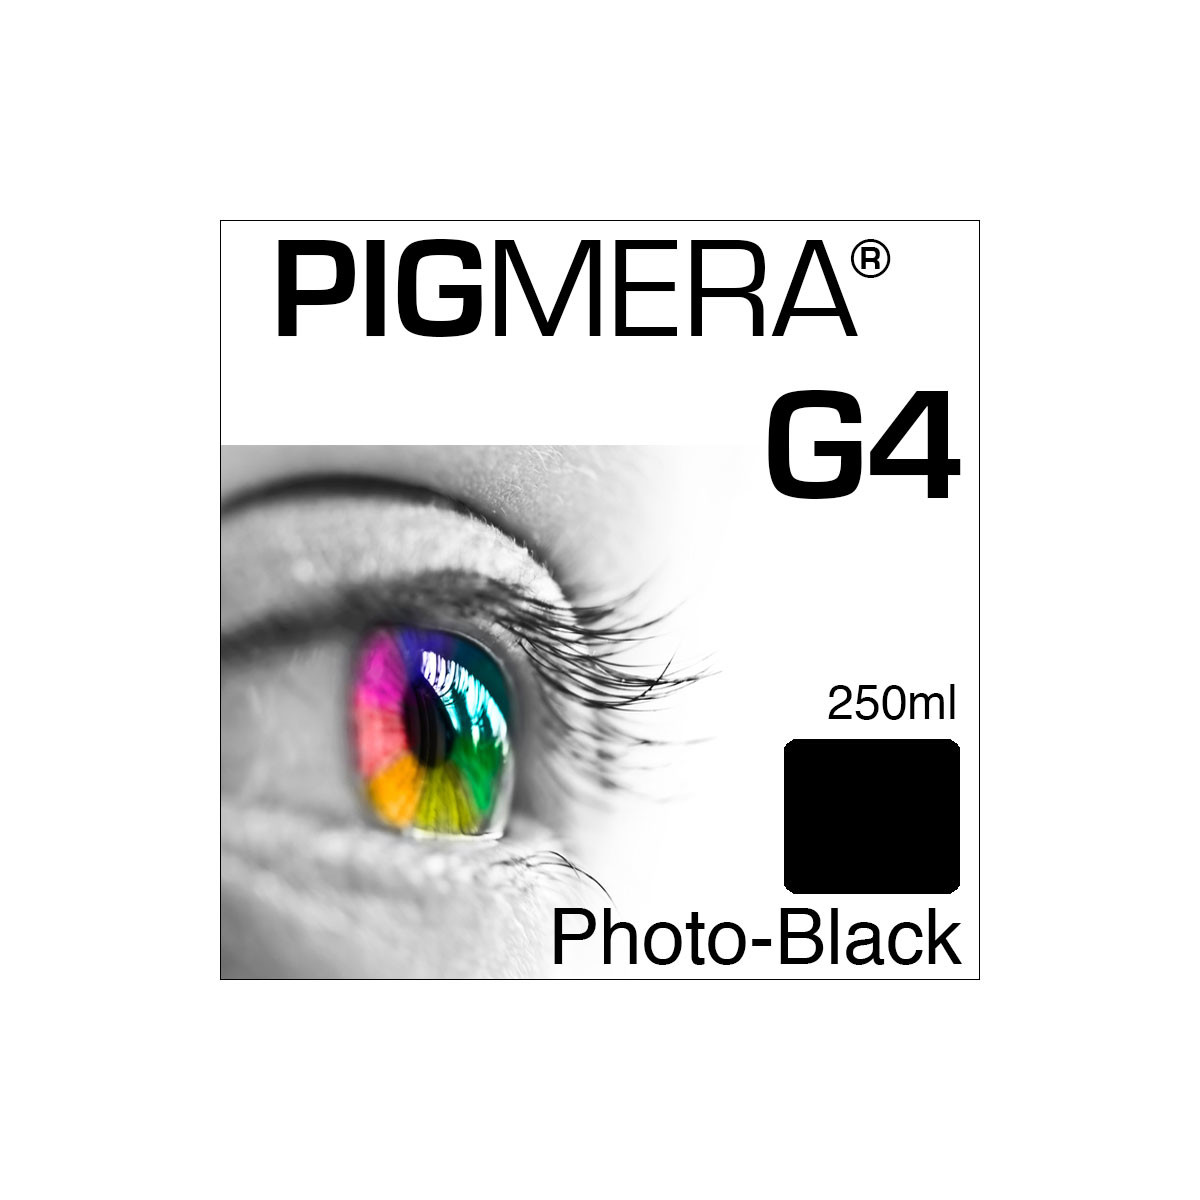 farbenwerk Pigmera G4 Flasche Photo-Black 250ml